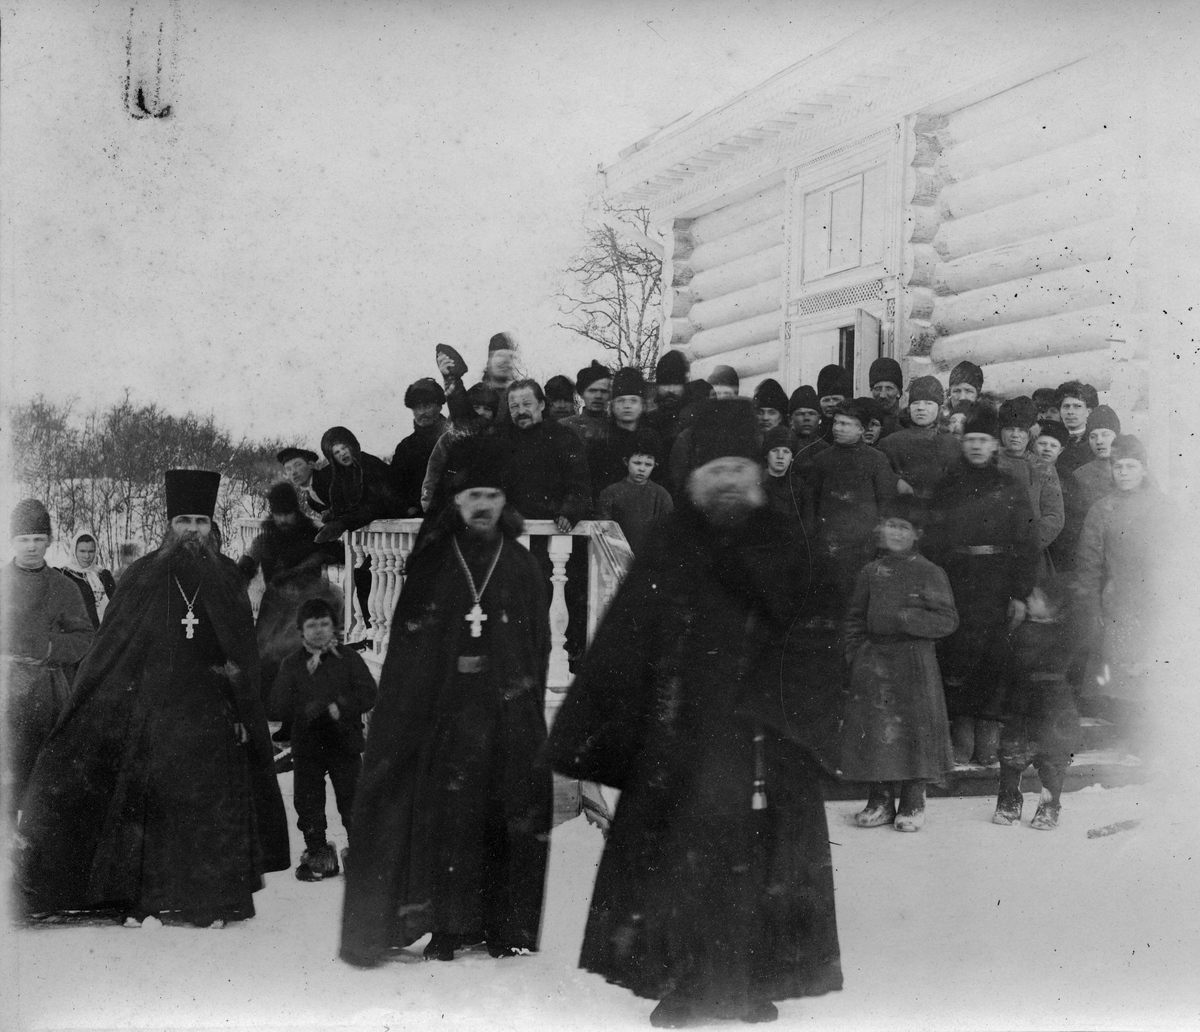 Munker utenfor klosterbygning, Pechenga, Russland 14.02.1908